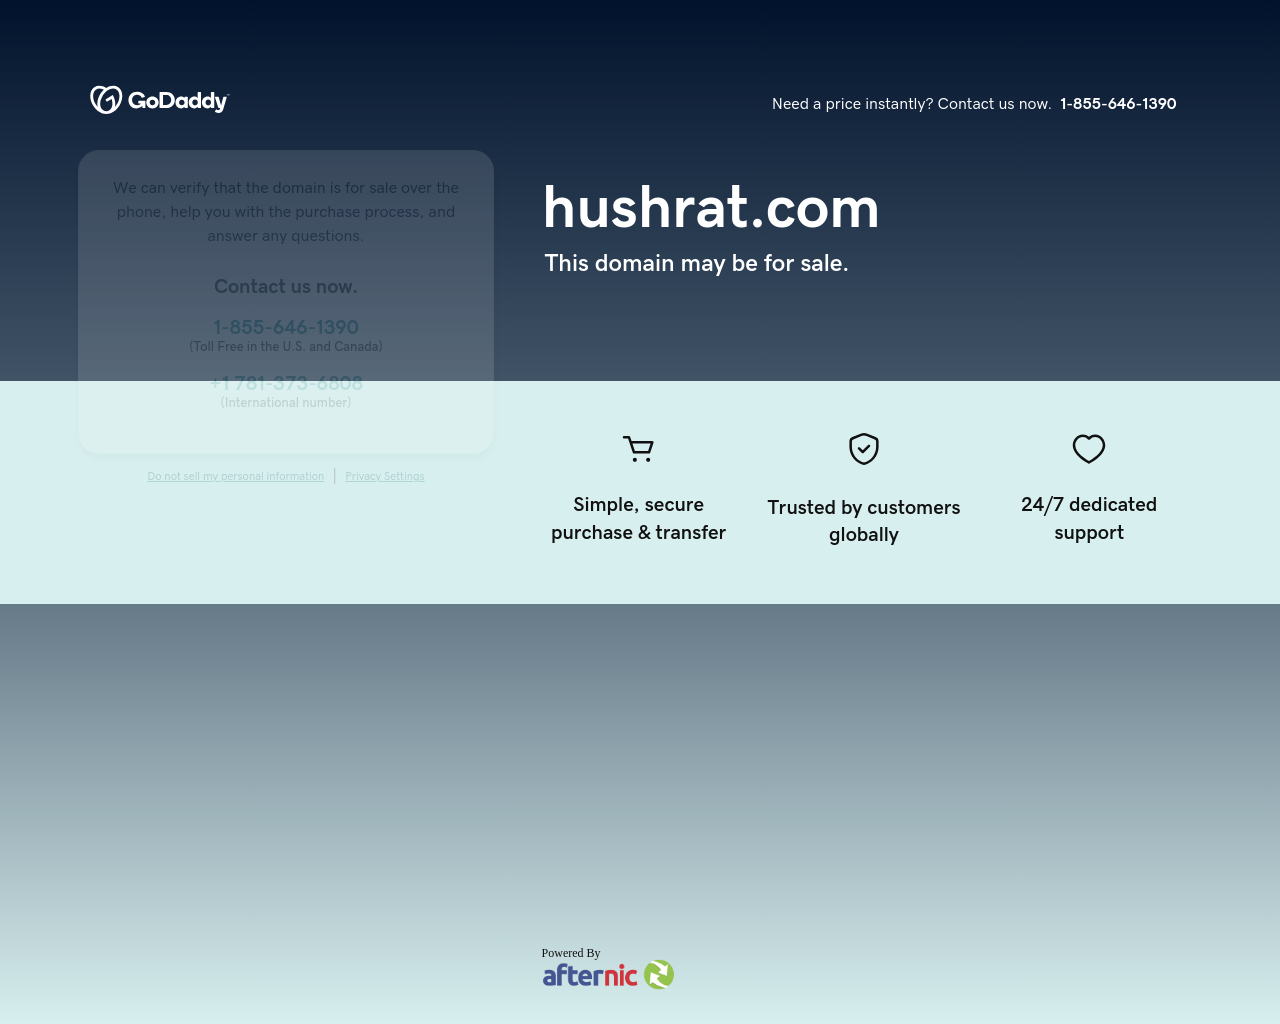 hushrat.com